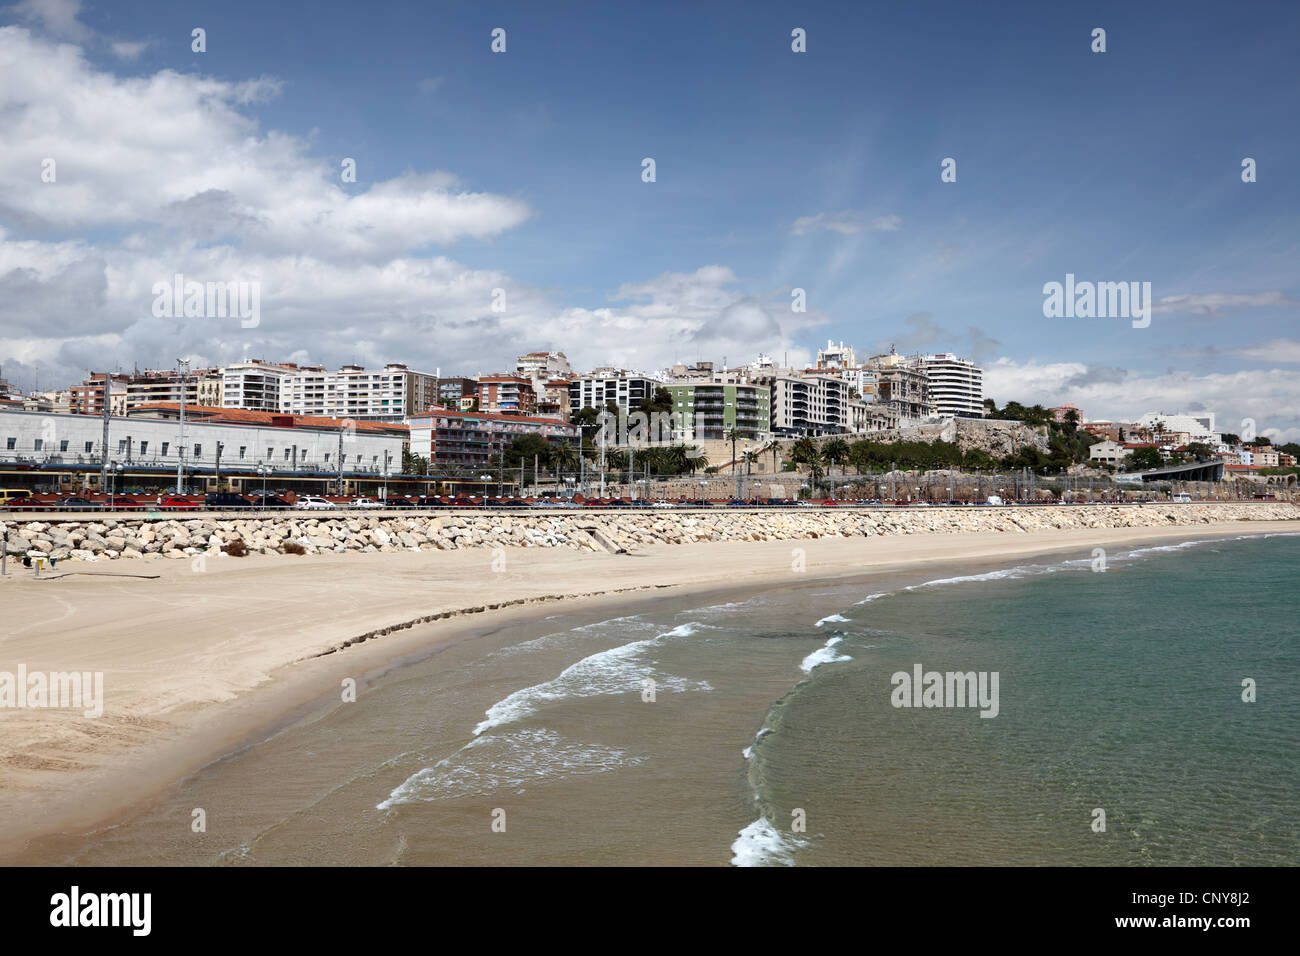 Beach of Tarragona, Catalonia Spain Stock Photo